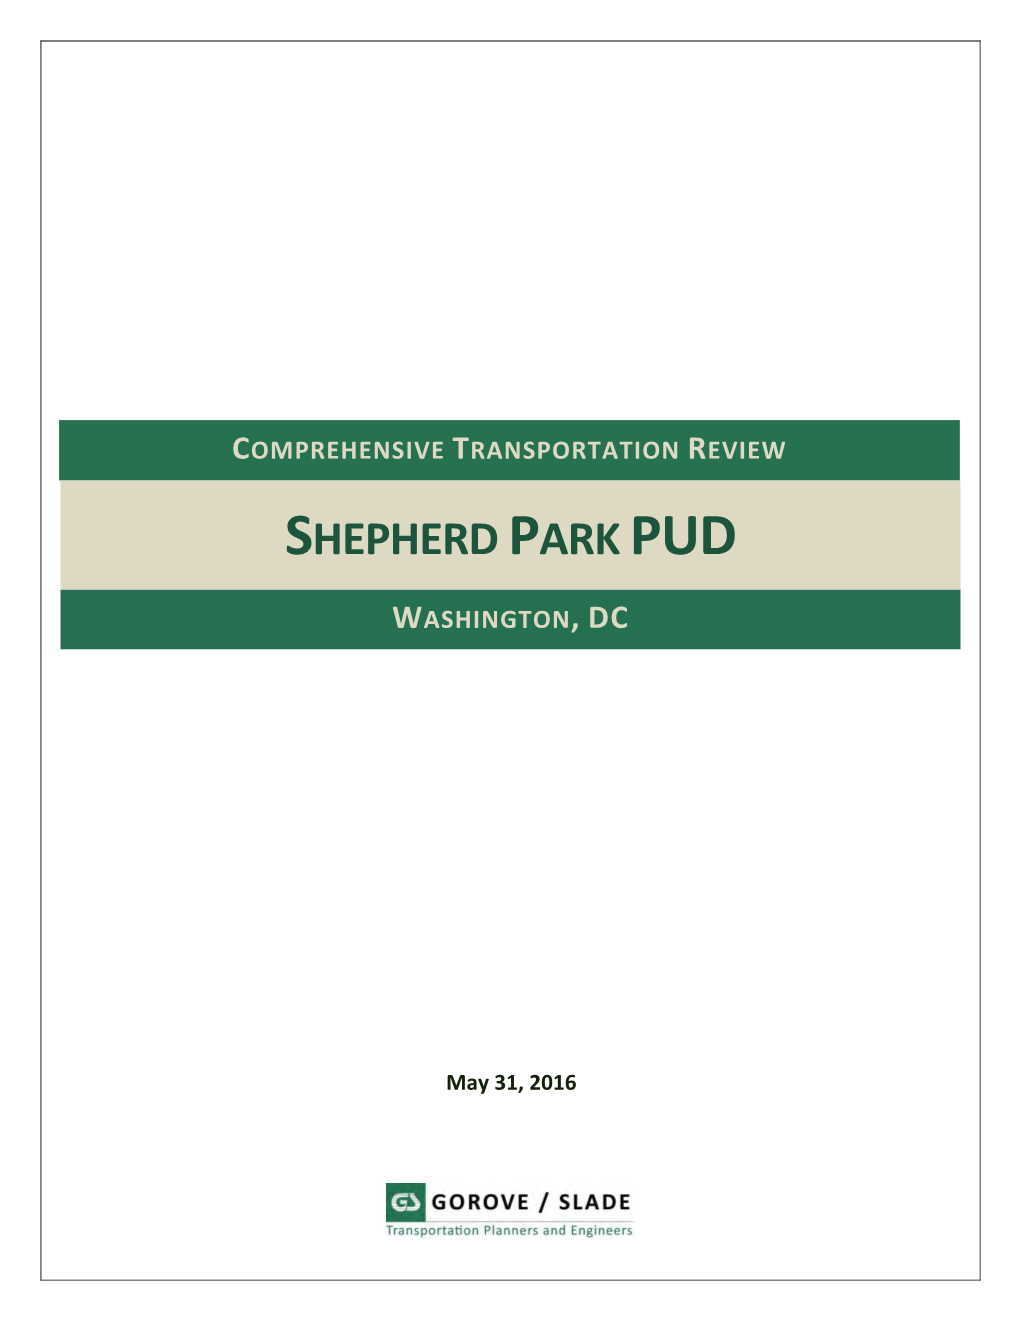 Shepherd Park Pud